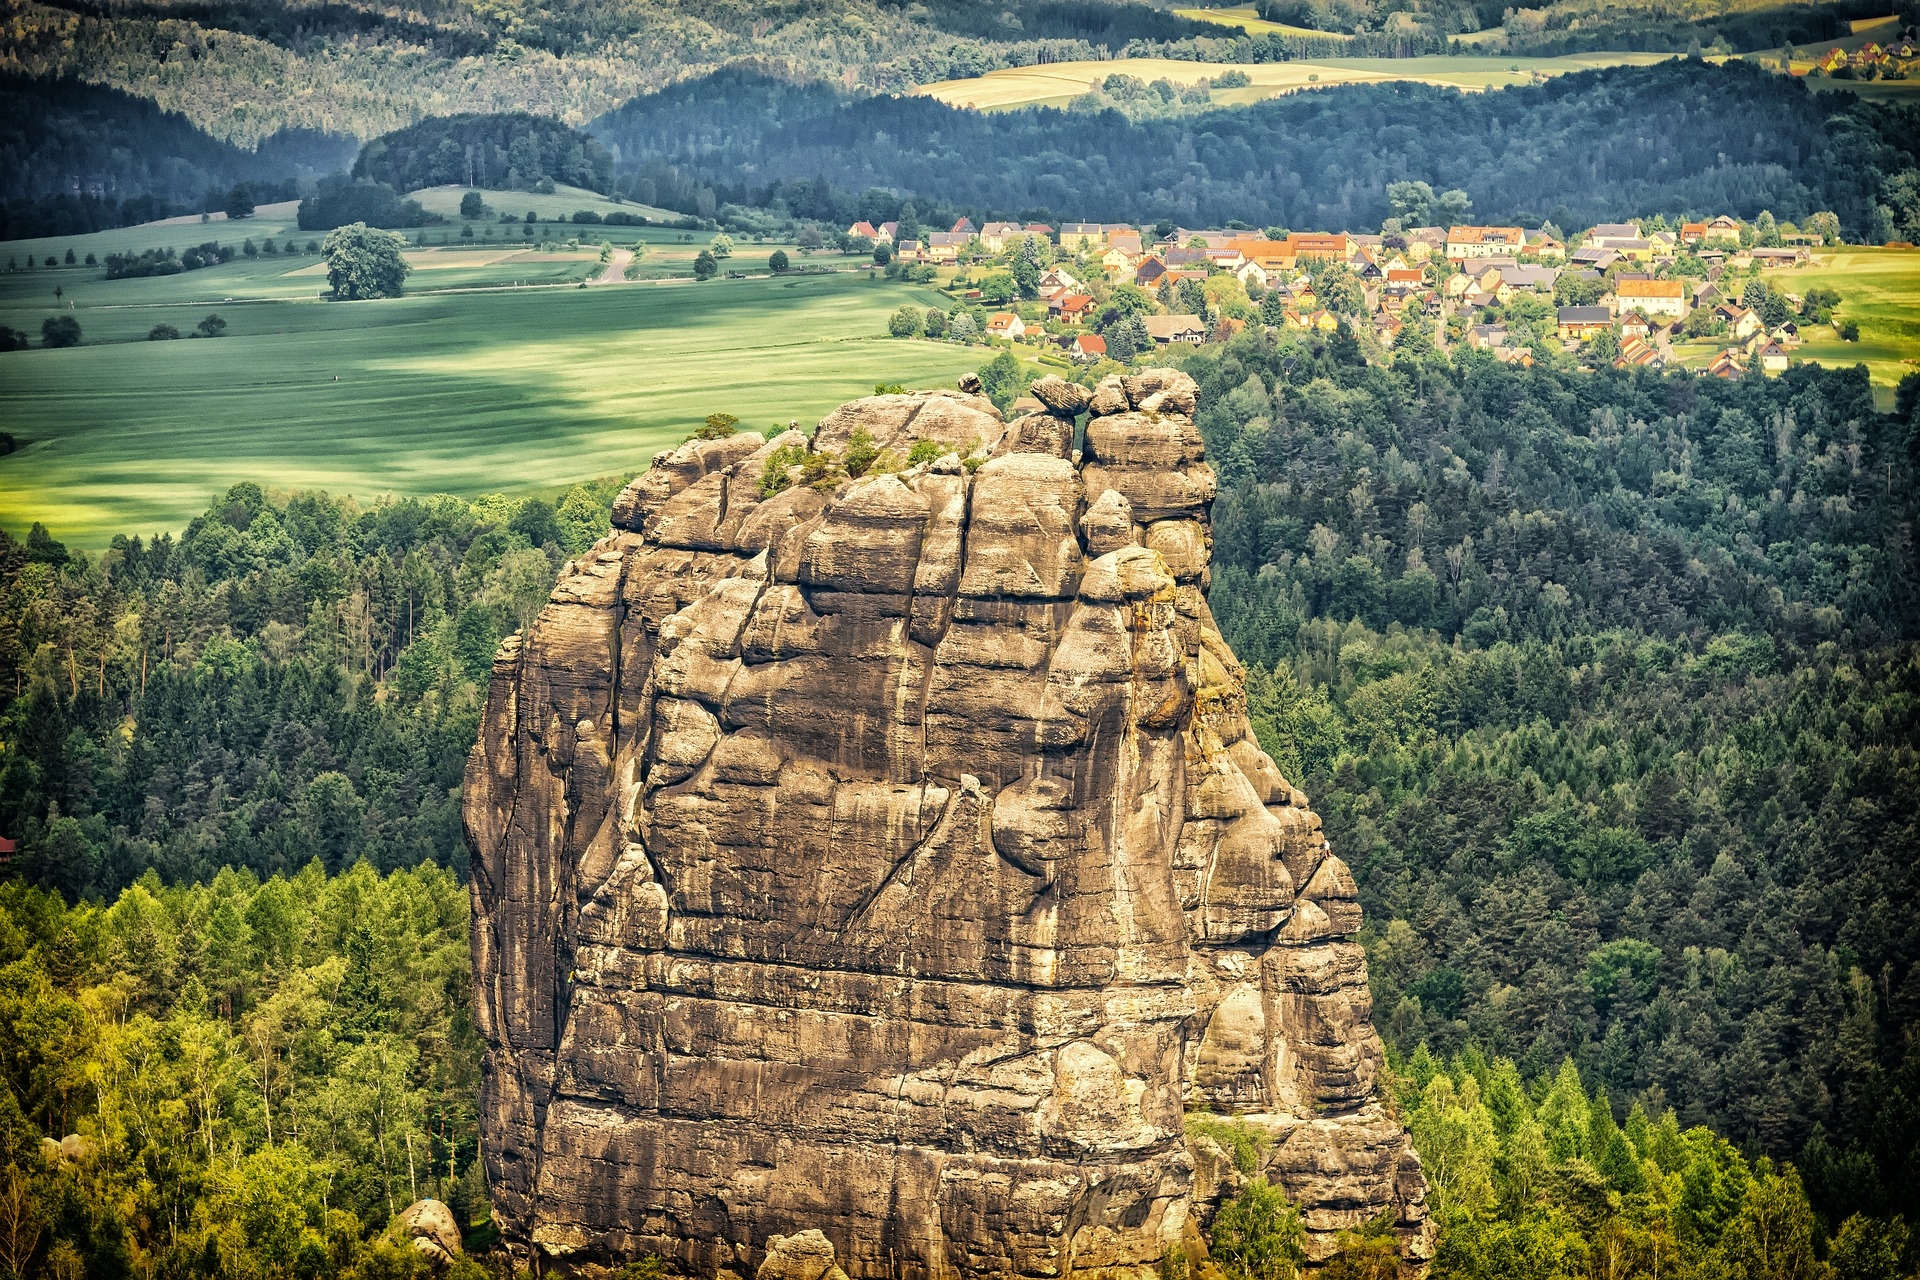 https://pixabay.com/en/landscape-rock-nature-green-2369868/